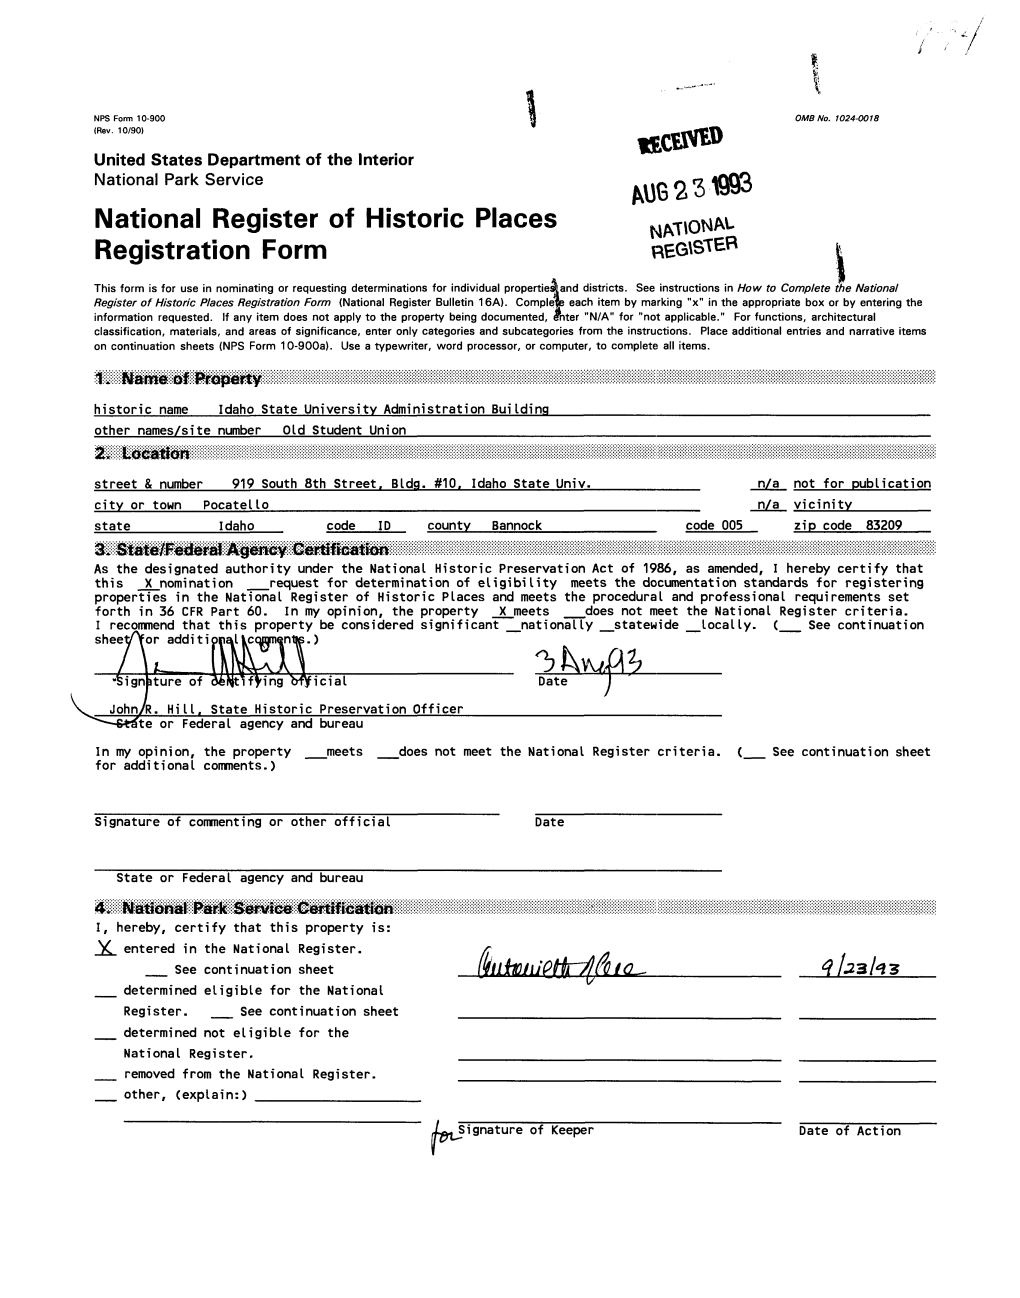 National Register of Historic Places NATIONAL Registration Form